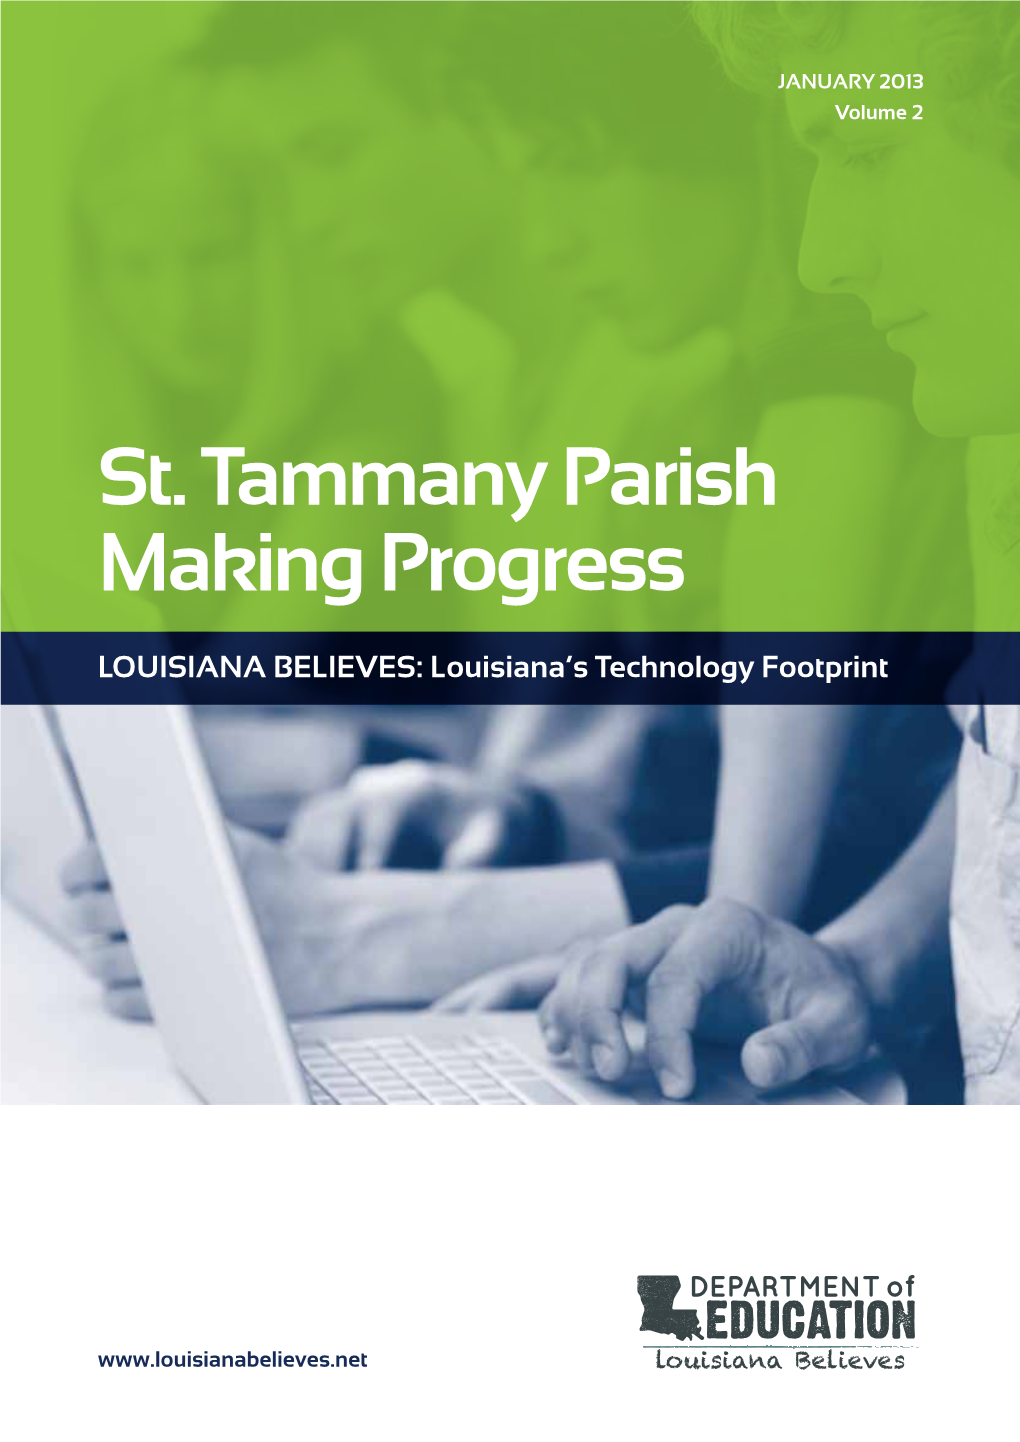 St. Tammany Parish Making Progress